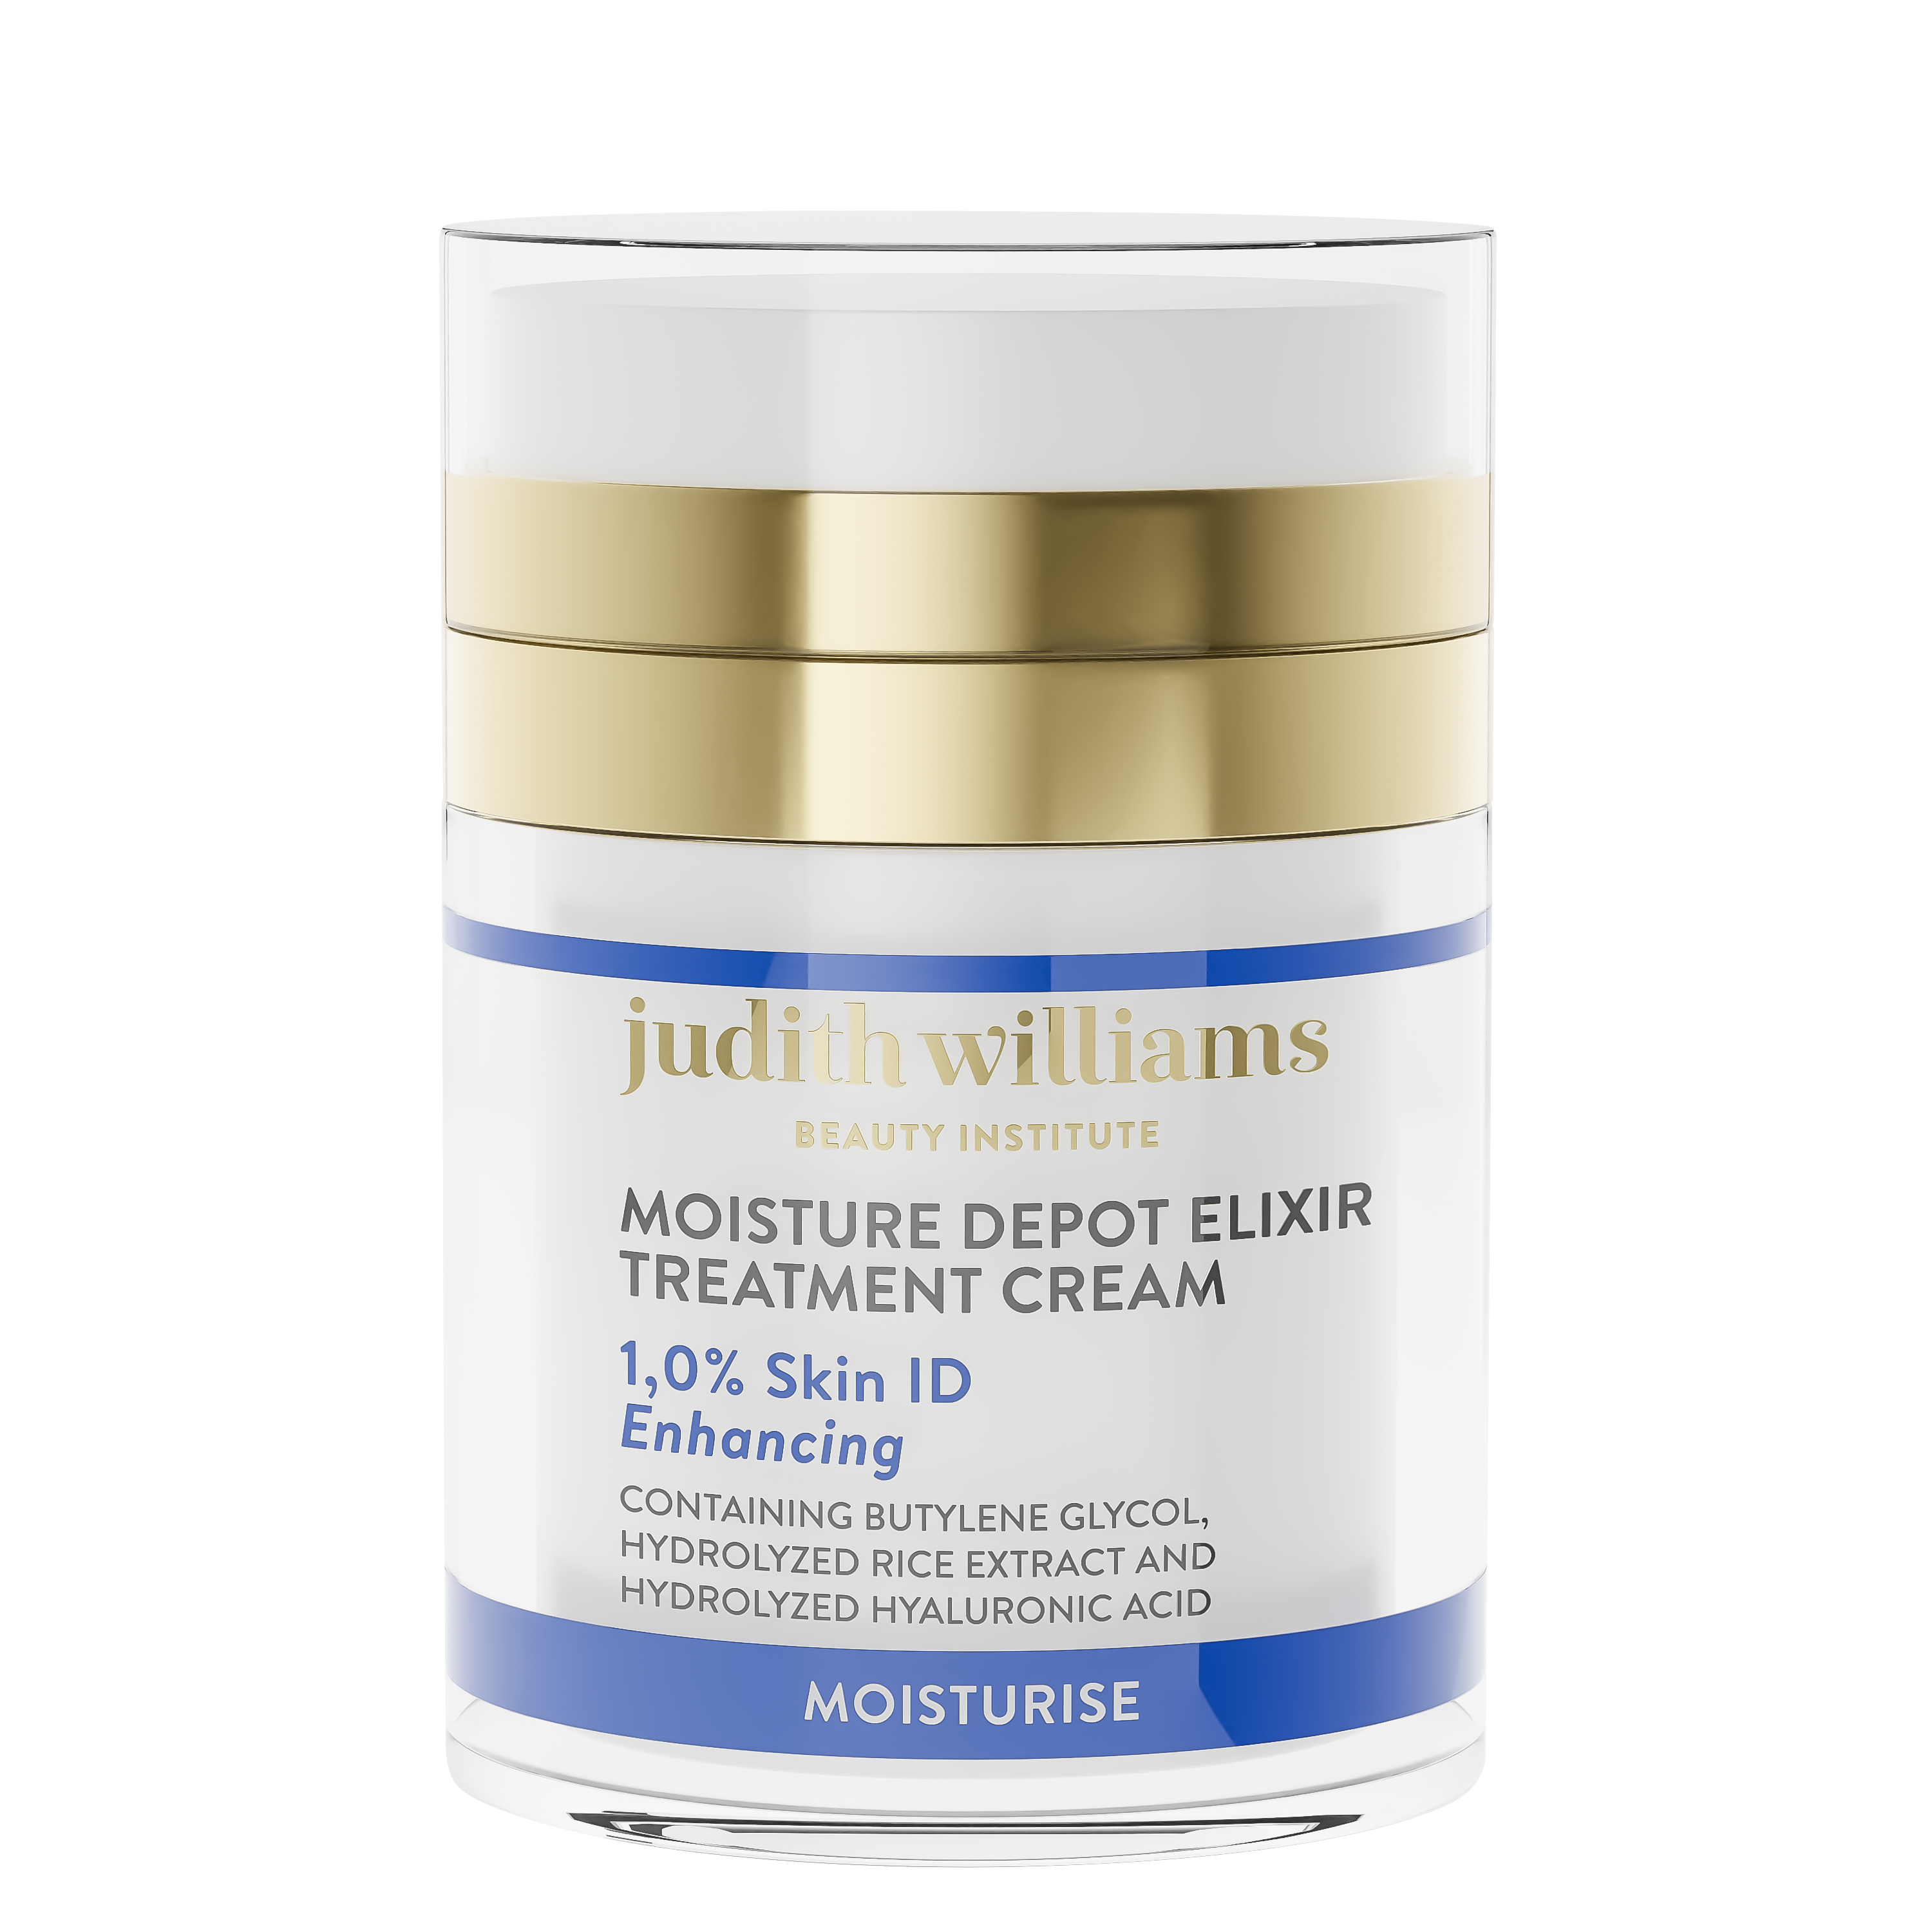 Beauty Institute Moisture Depot Elixir Treatment Cream